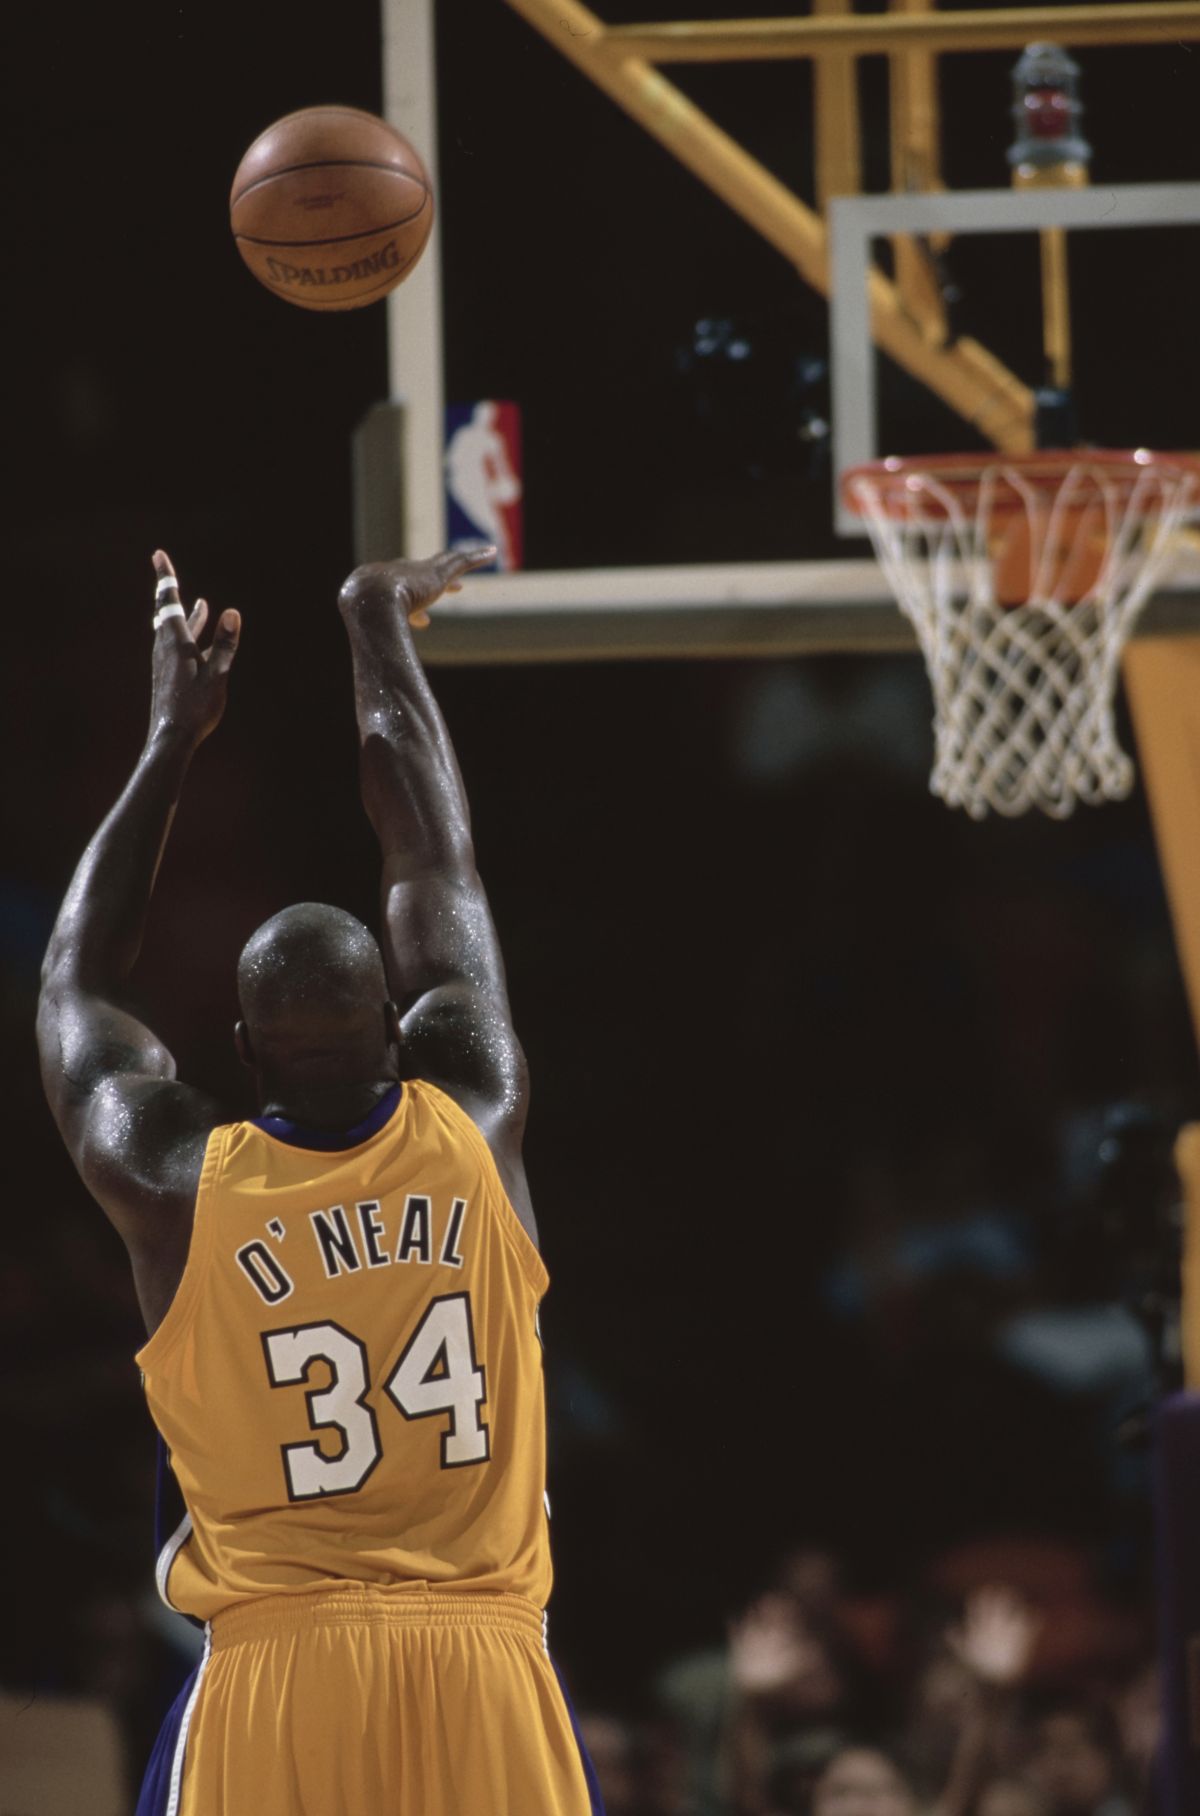 Shaquille O'Neal face dezvăluiri uluitoare! Cât cântărea în perioada Lakers, divergențele cu Kobe Bryant + Schimbarea spectaculoasă din prezent